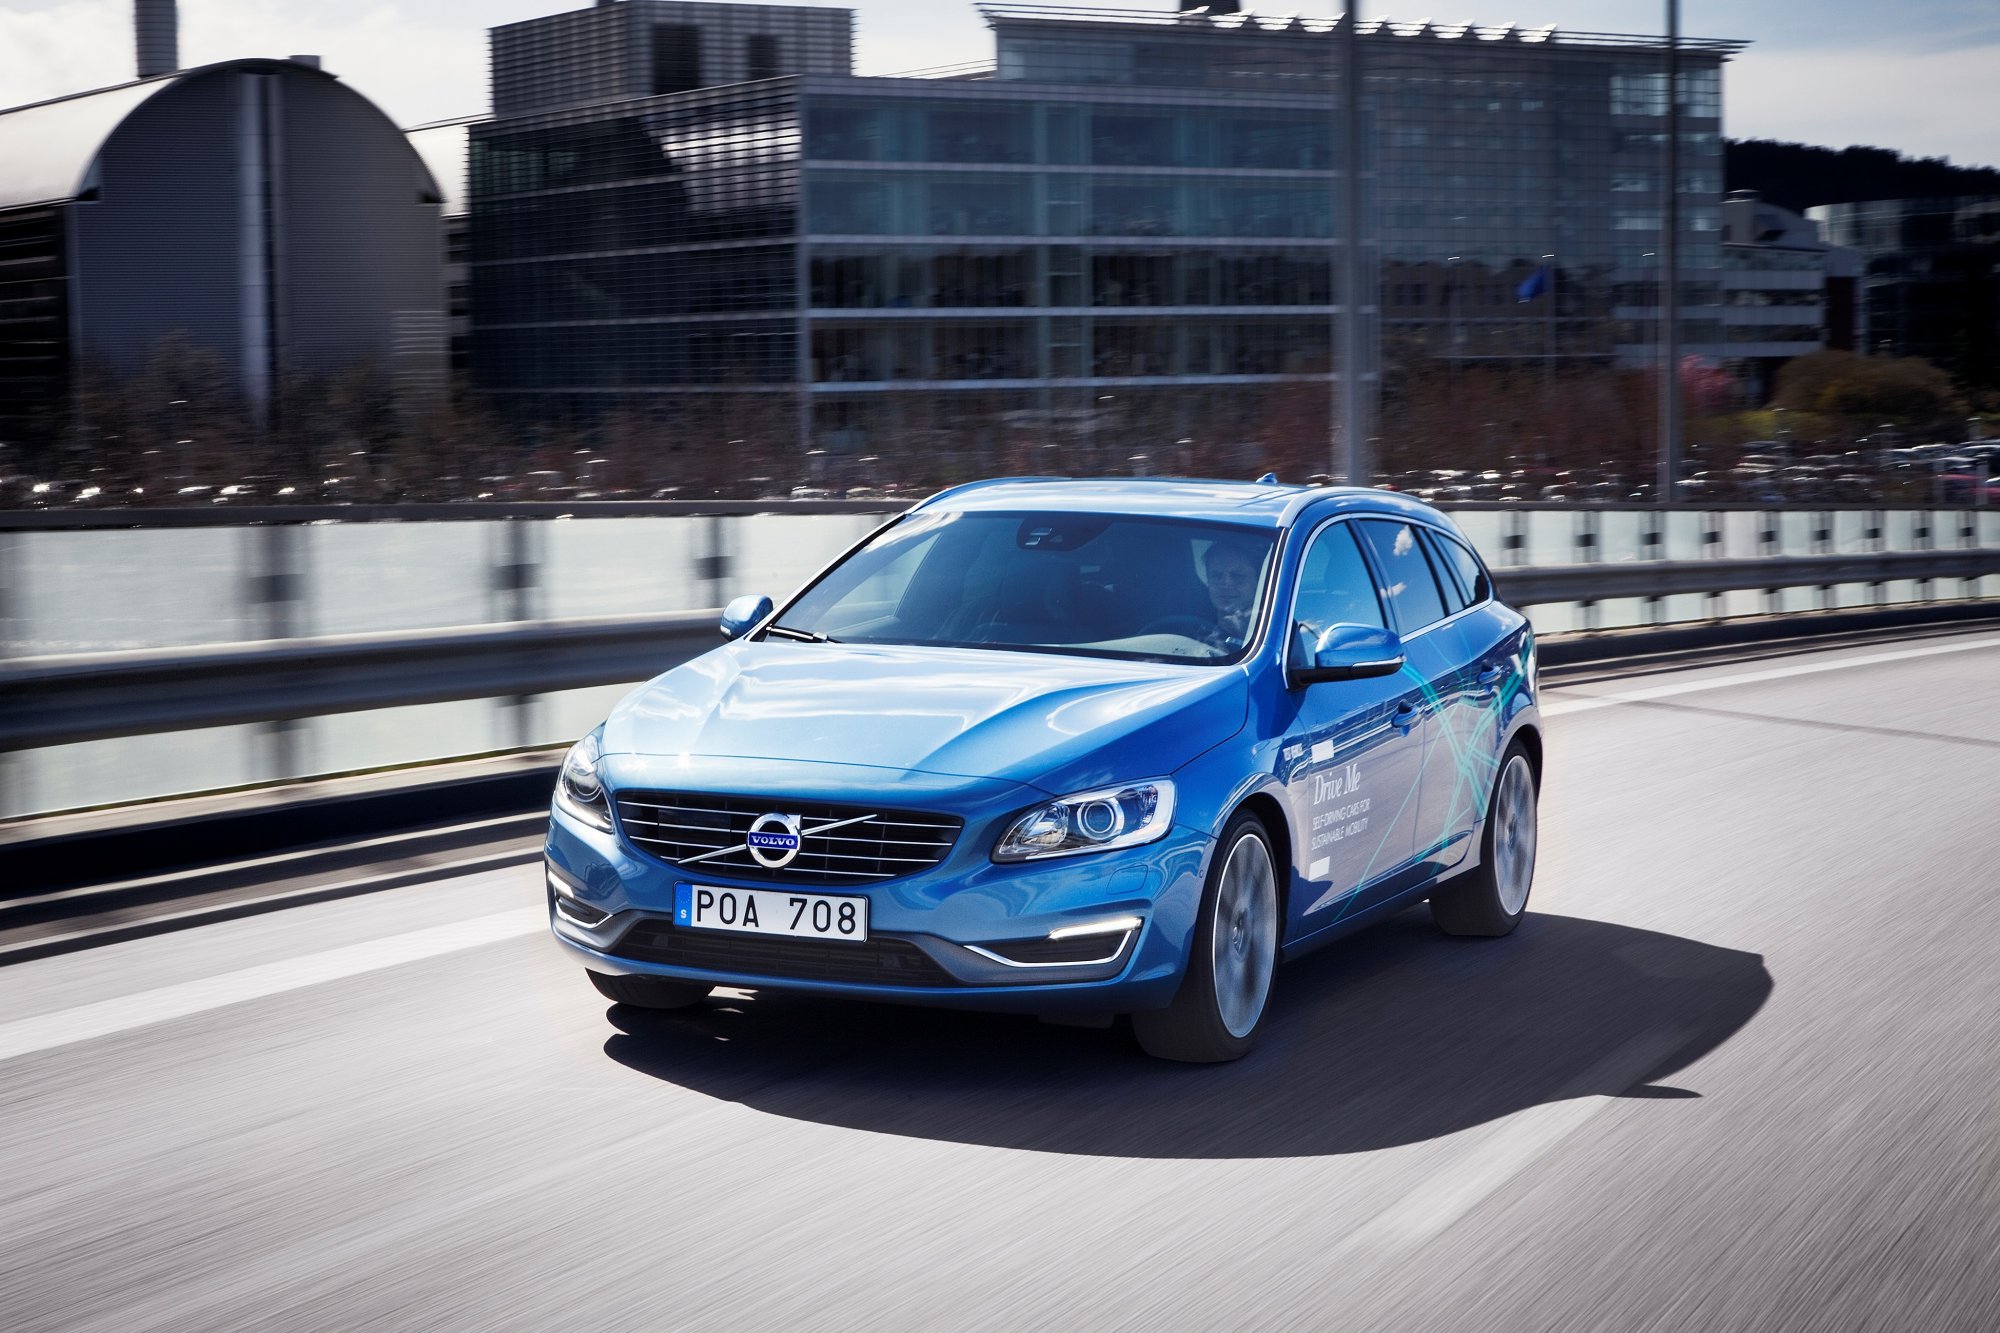 Des voitures Volvo autonomes devraient commencer à rouler en Suède en 2017. © Volvo